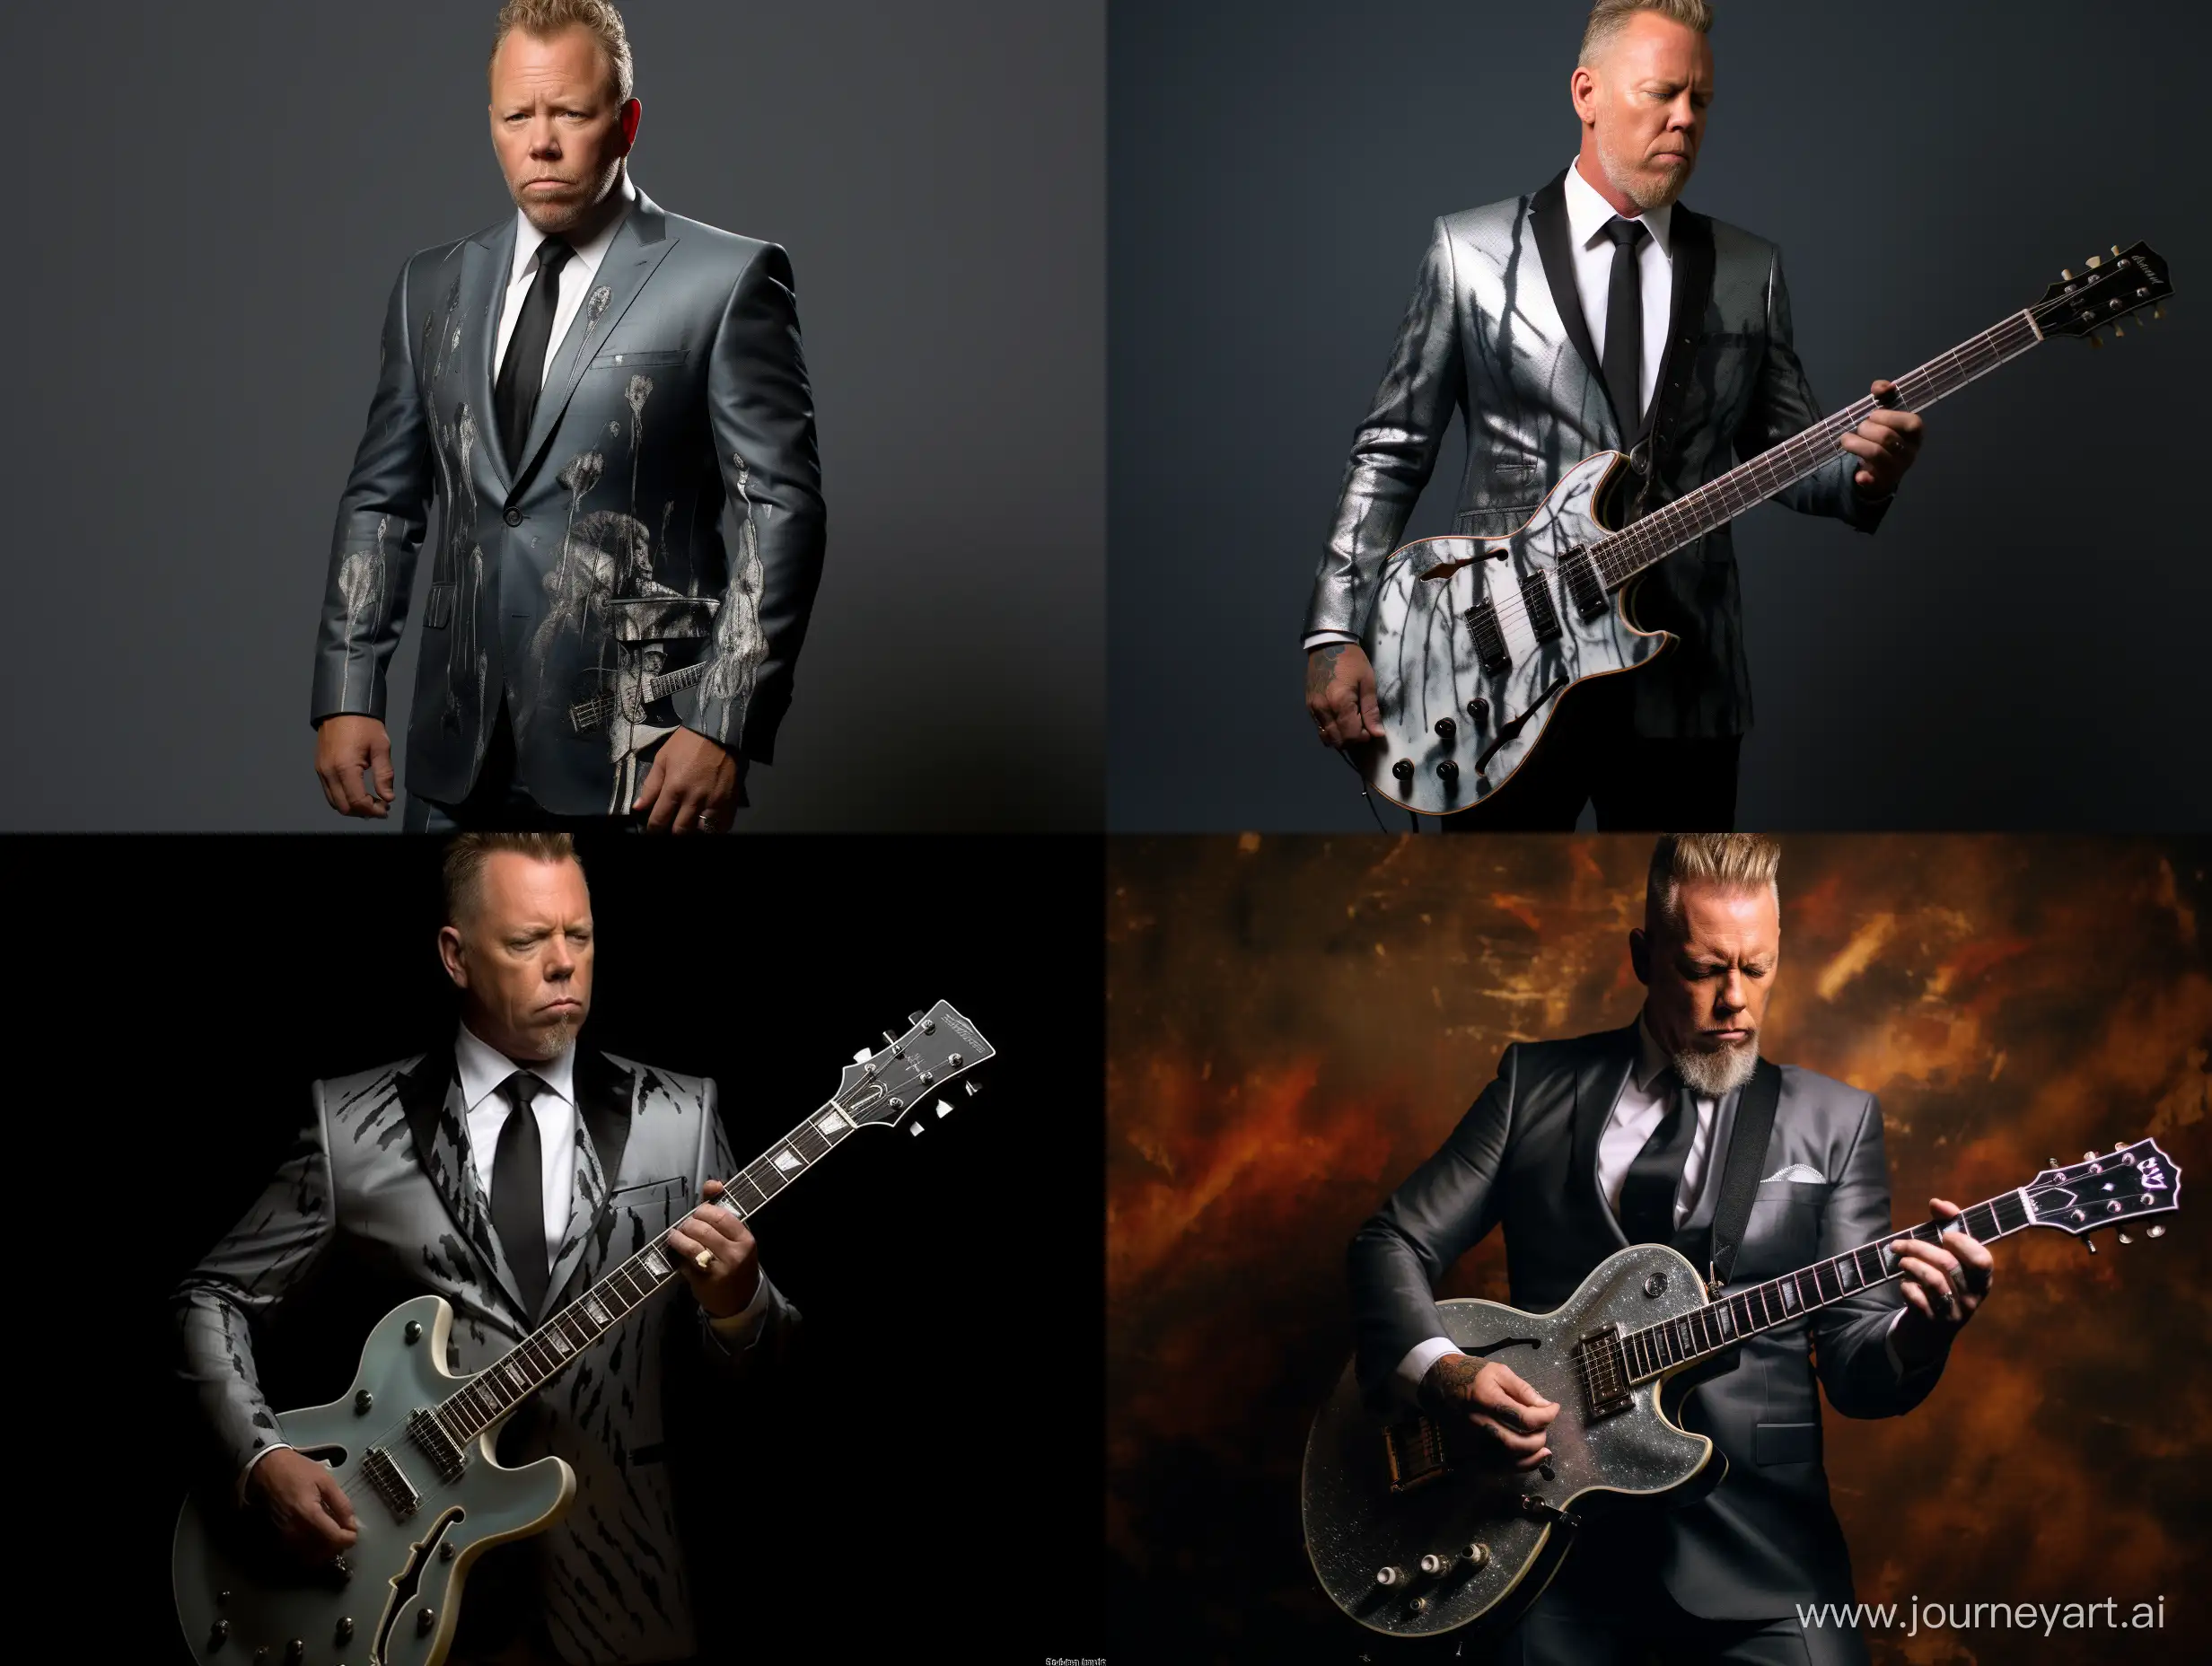 James Hetfield from Metallica wearing a suit